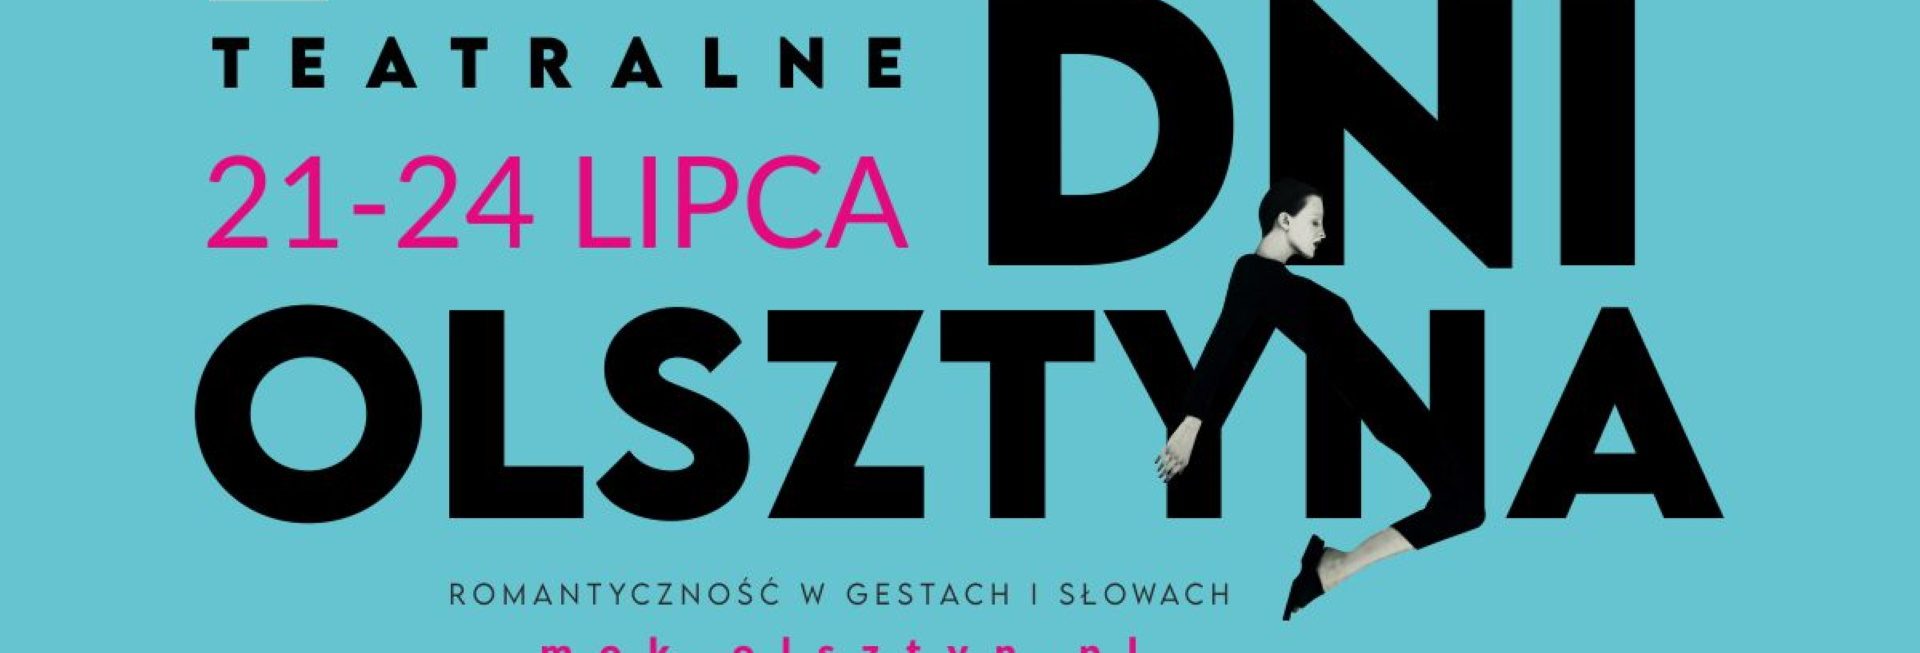 Plakat zapraszający do Olsztyna na cykliczną imprezę Dni Olsztyna 2022.